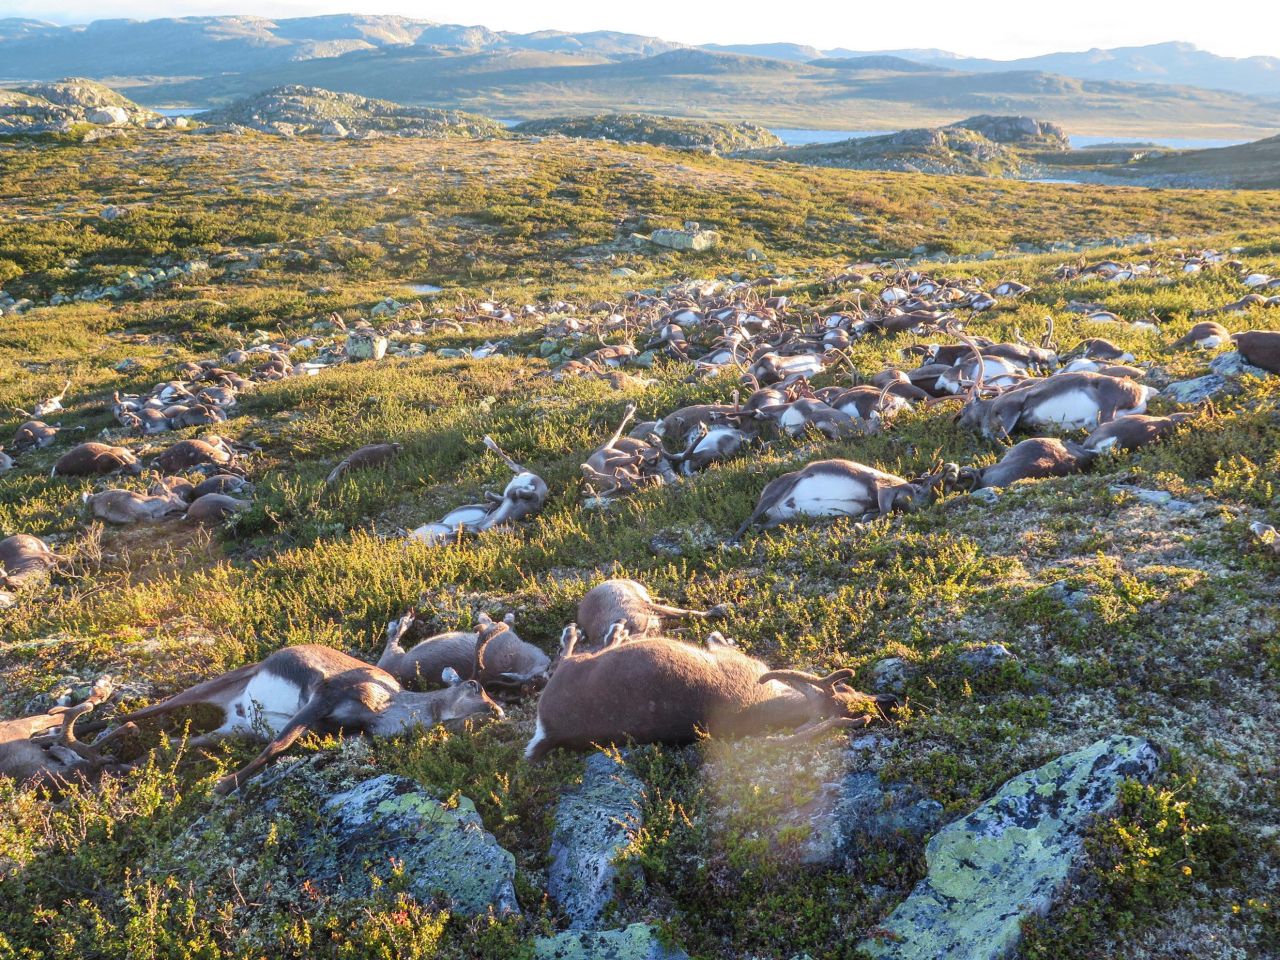 VIDEO. Plus de 300 rennes meurent foudroyés en Norvège